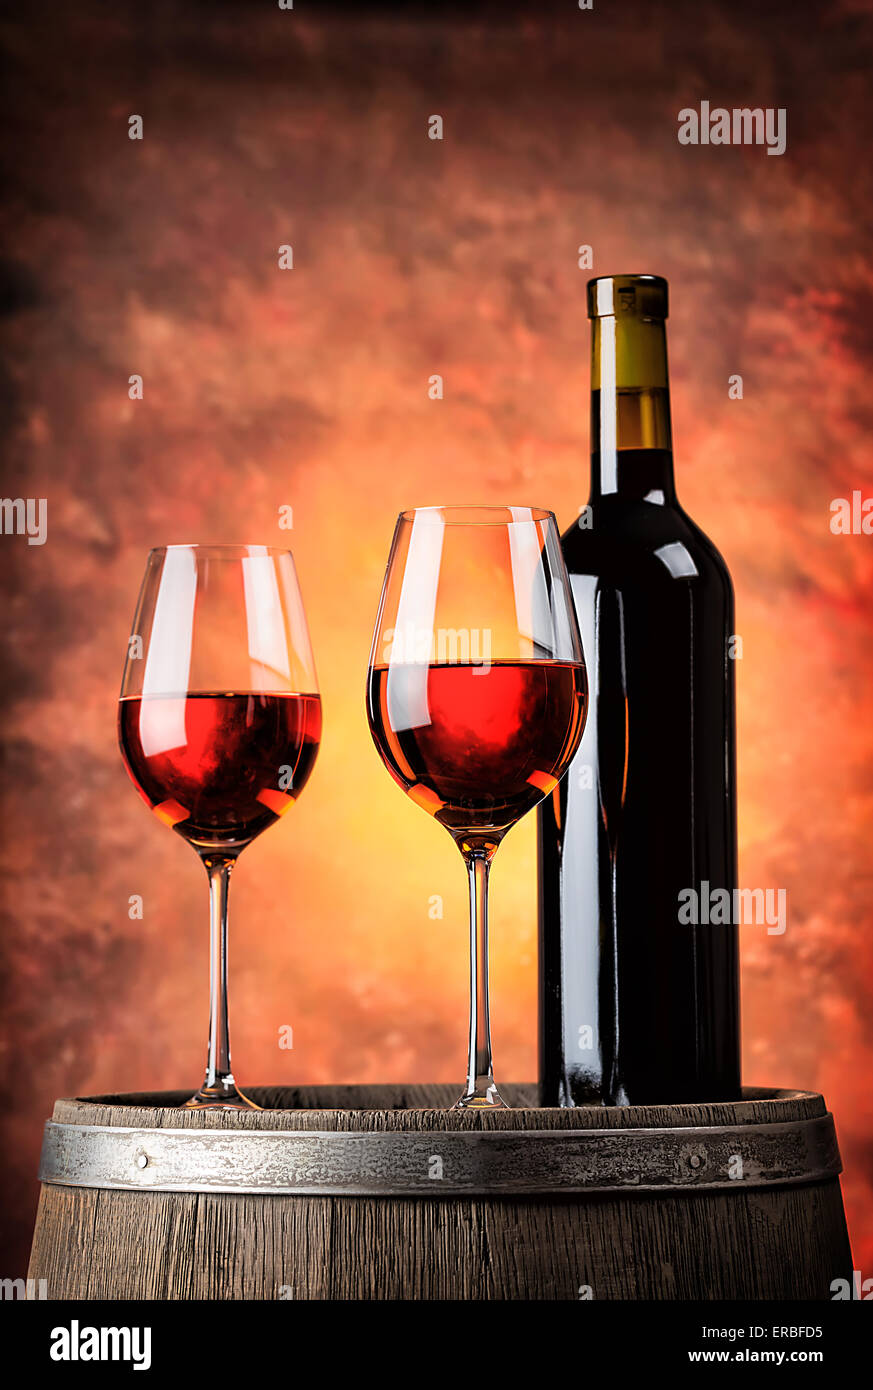 Два бокала вина бабек. Два бокала красного вина. Бутылка вина и два бокала. Два бокала с вином. Бутылка красного вина с бокалом.